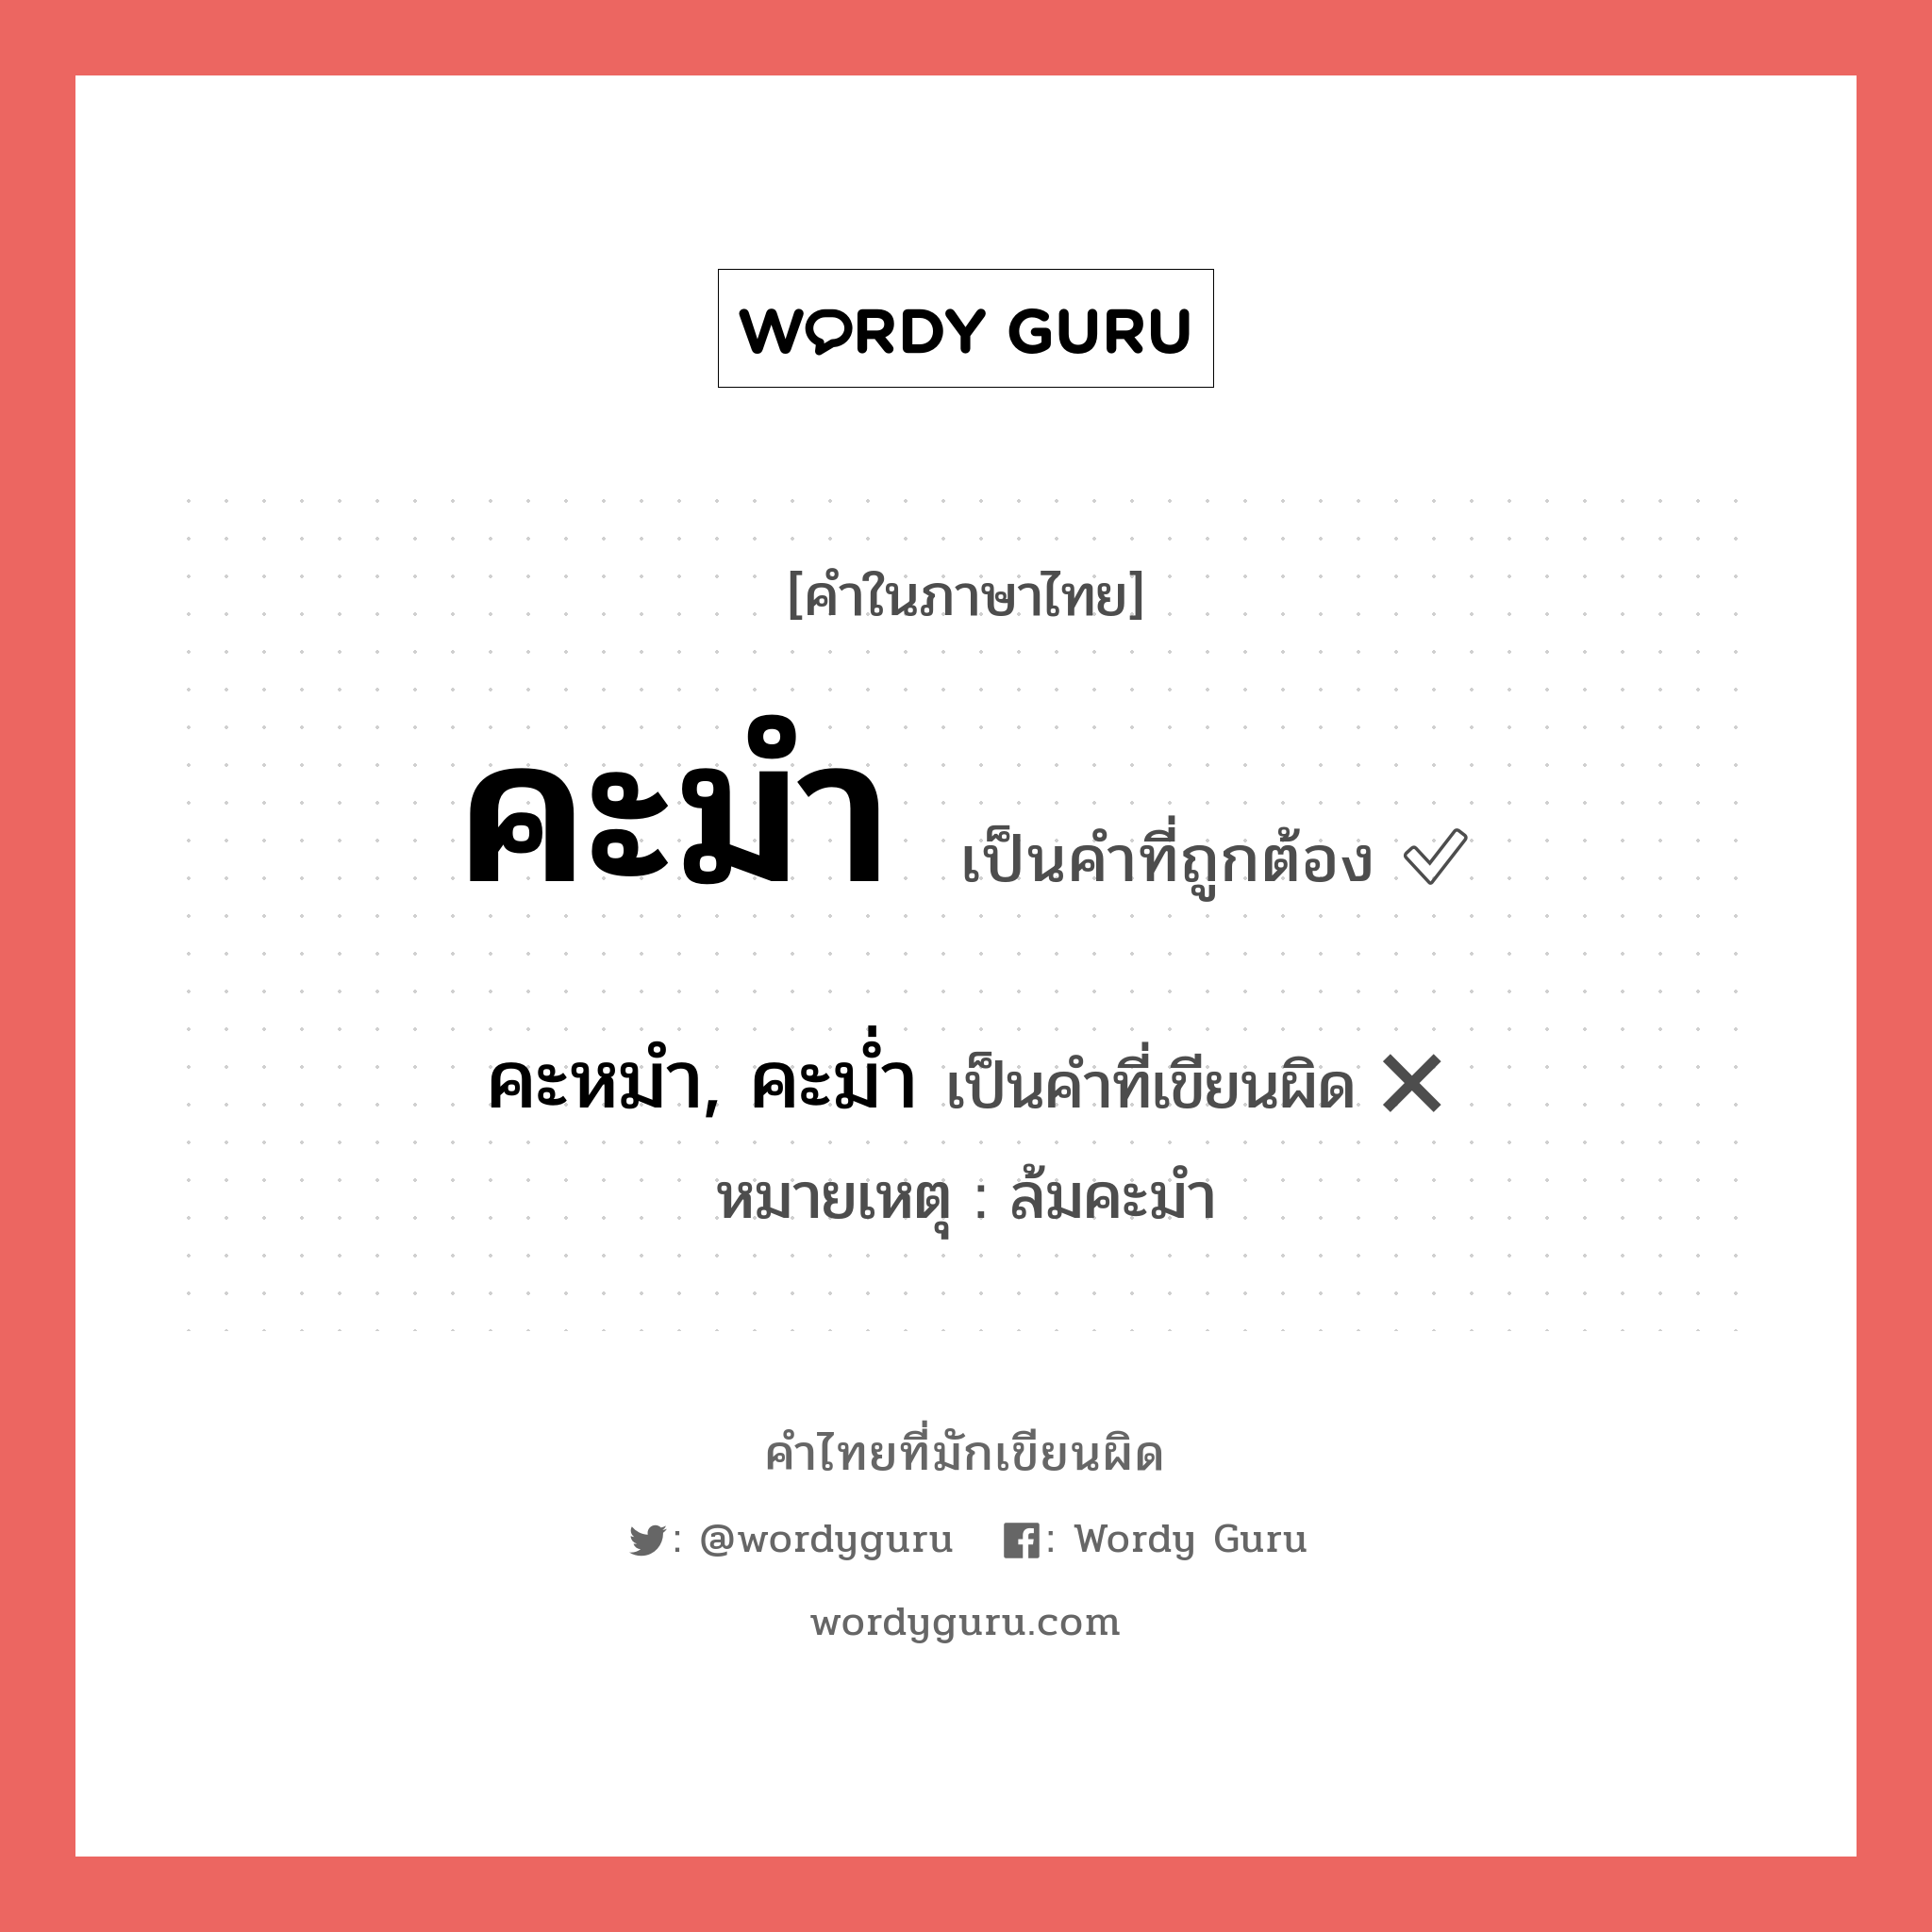 คะหมำ, คะม่ำ หรือ คะมำ คำไหนเขียนถูก?, คำในภาษาไทยที่มักเขียนผิด คะหมำ, คะม่ำ คำที่ผิด ❌ คะมำ หมายเหตุ ล้มคะมำ